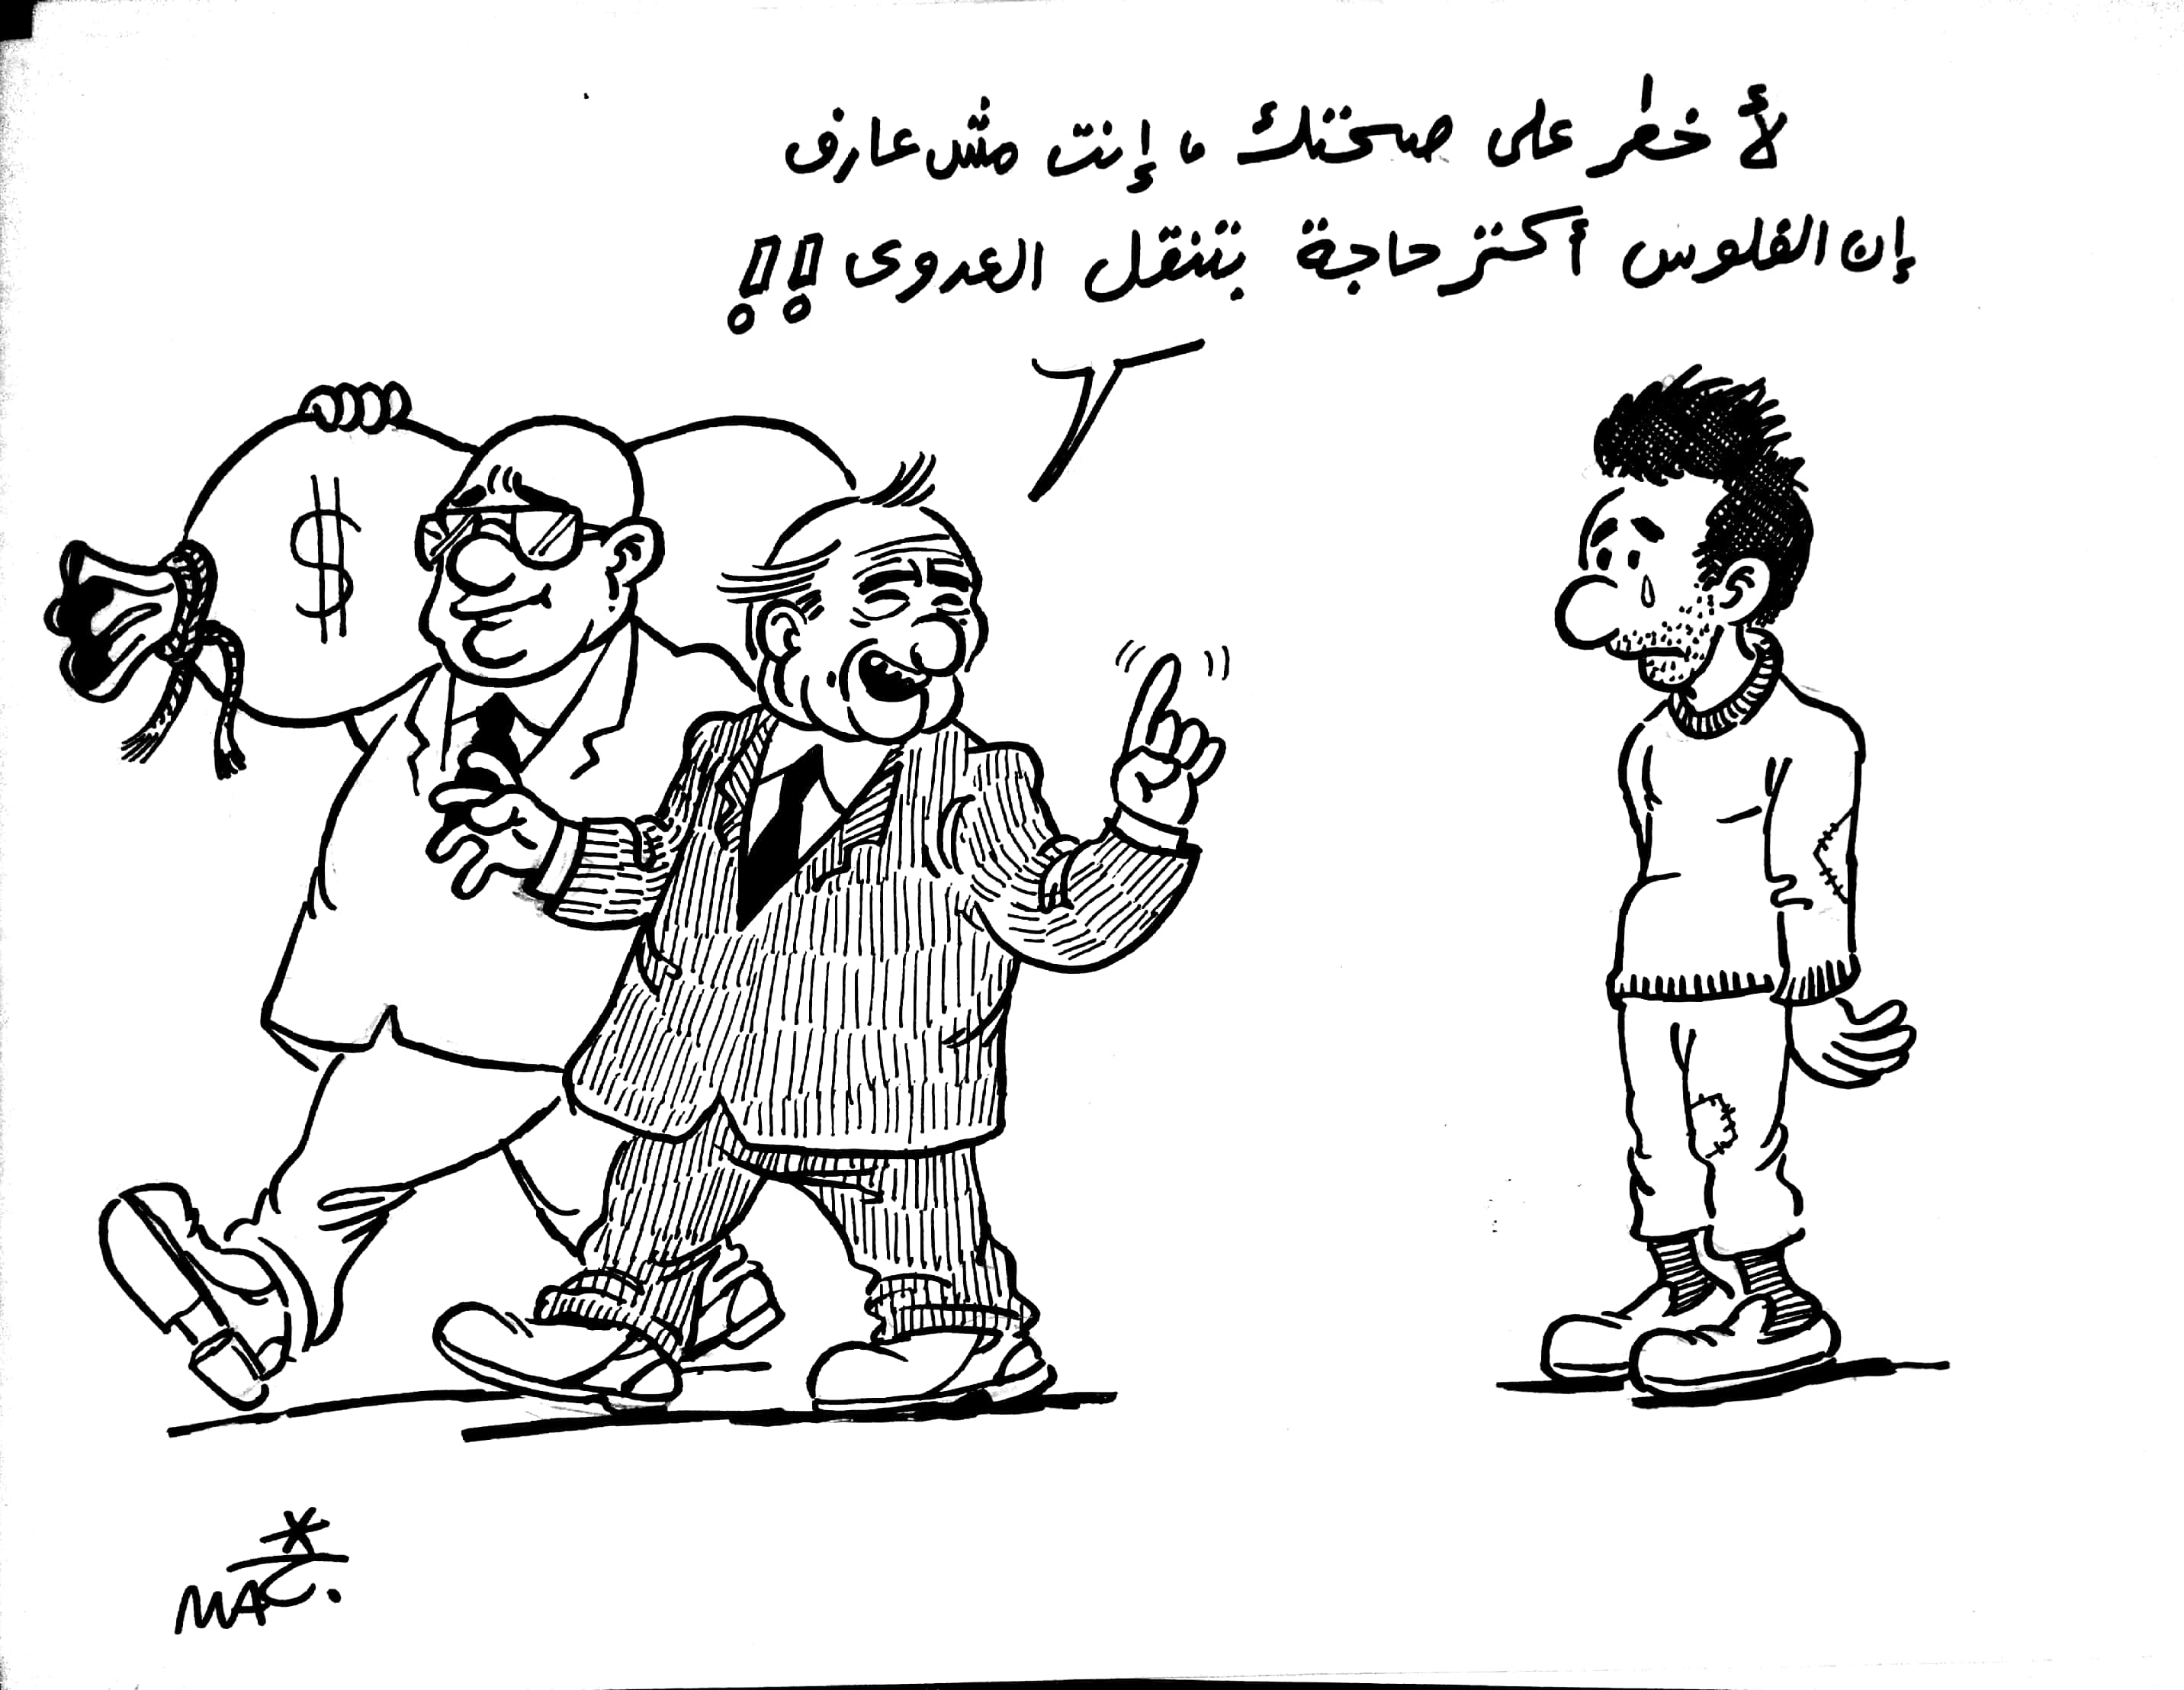 Toshfesh - Daily Cartoon